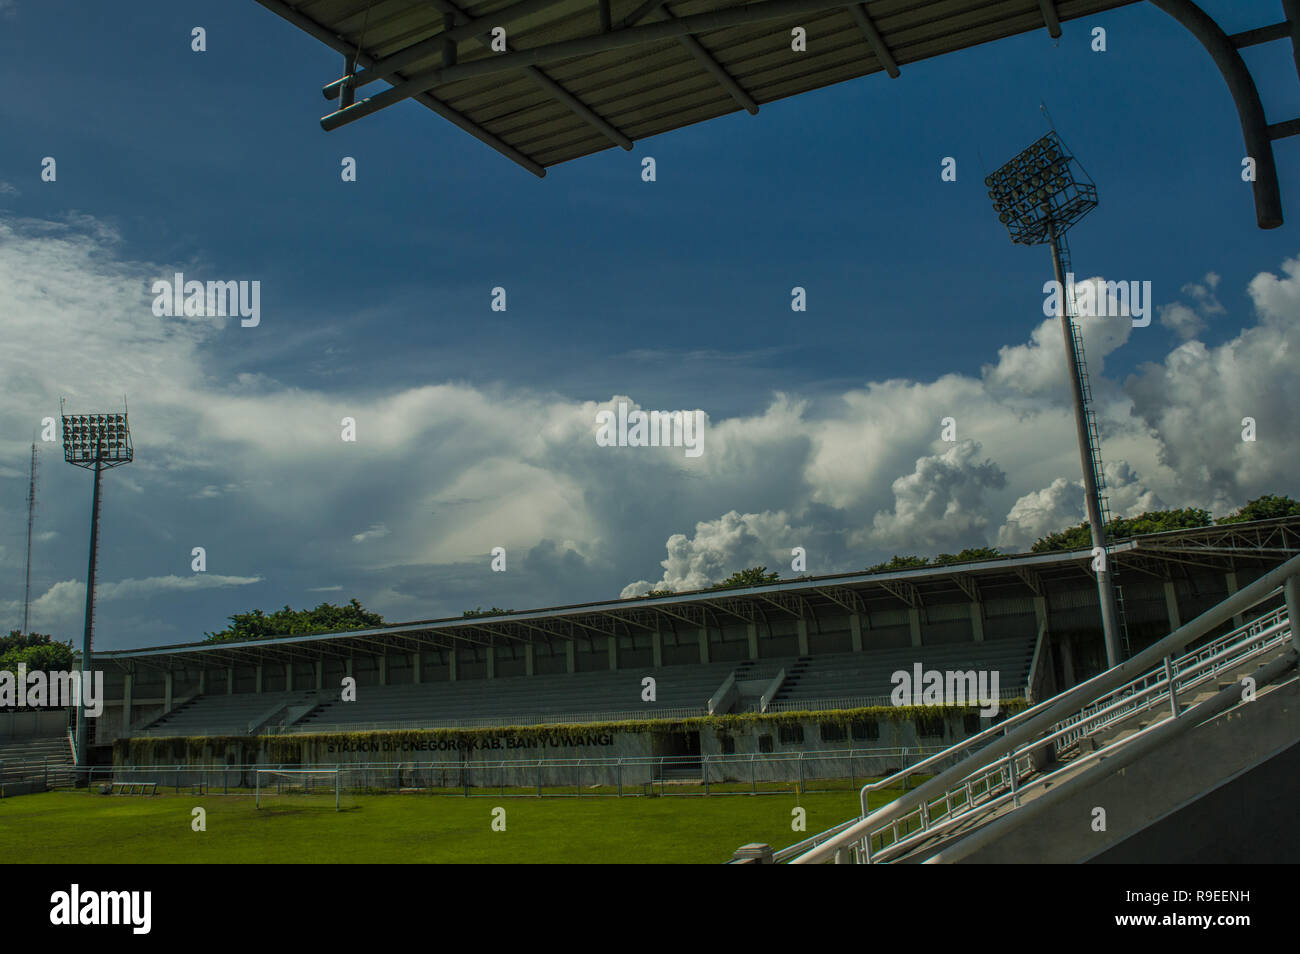 This stadium is located in Banyuwangi city Stock Photo